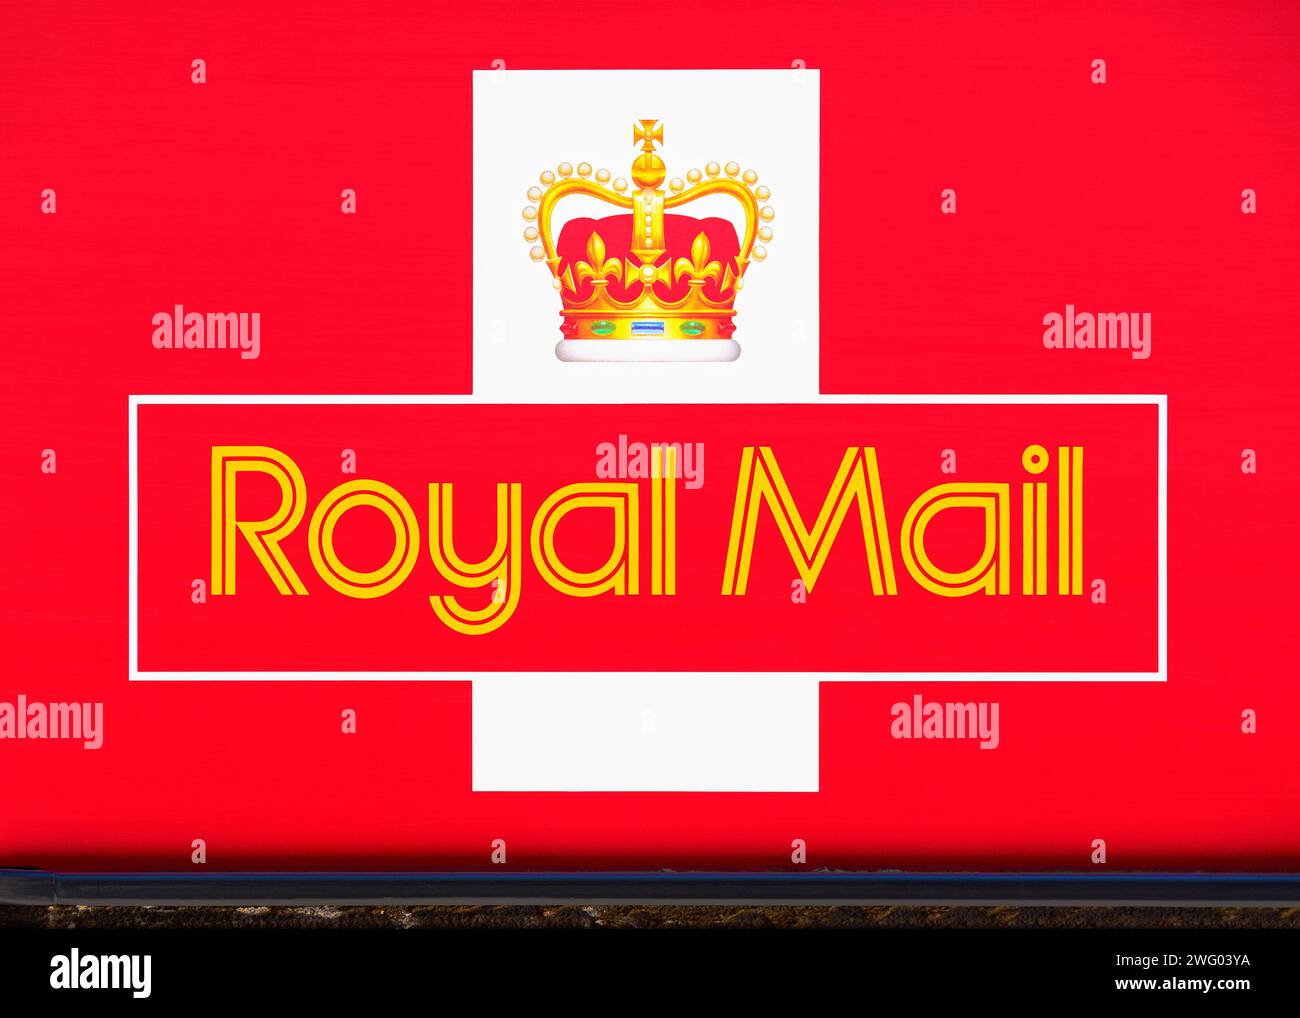 Logo emblématique de Royal Mail sur le côté d'un camion de livraison, Close Up, Oxford, Angleterre, Royaume-Uni Banque D'Images